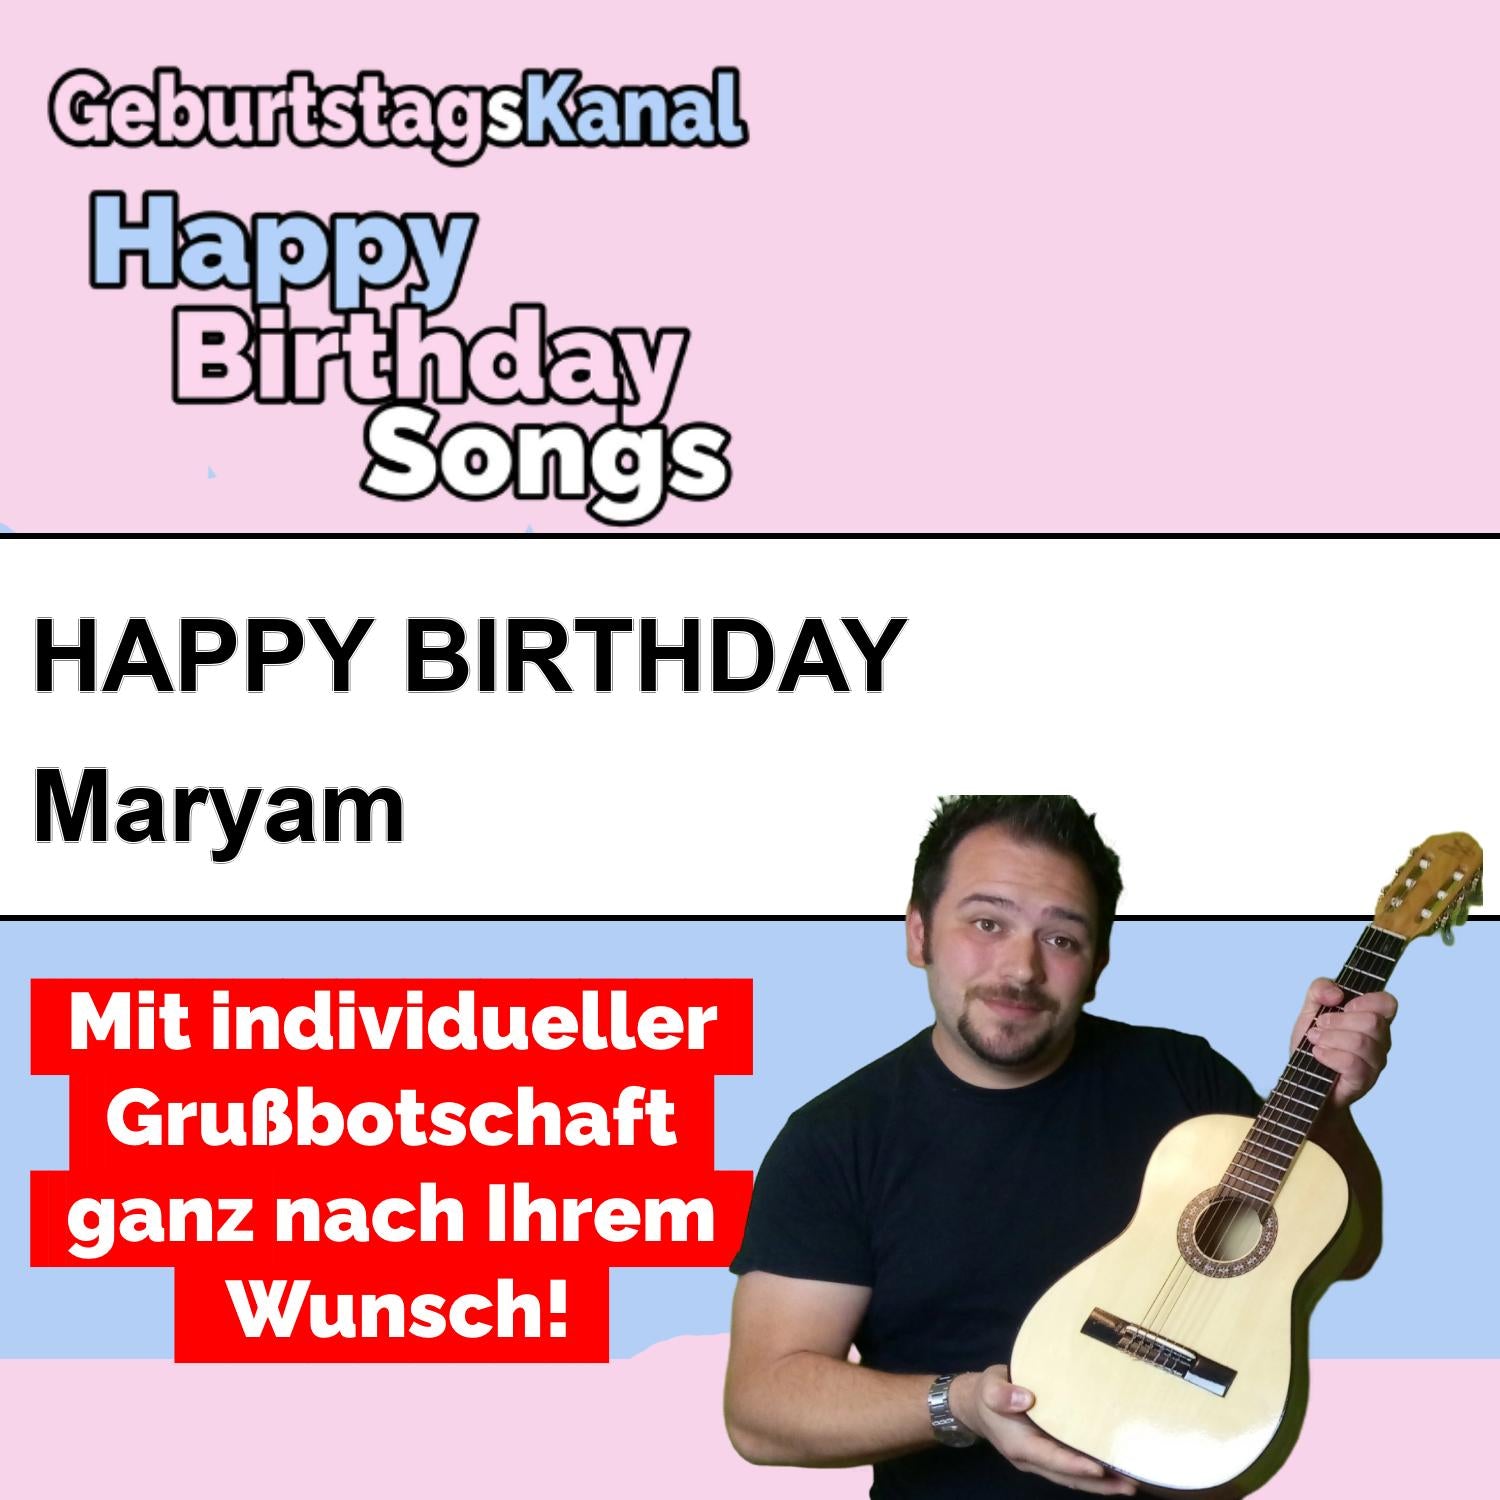 Produktbild Happy Birthday to you Maryam mit Wunschgrußbotschaft